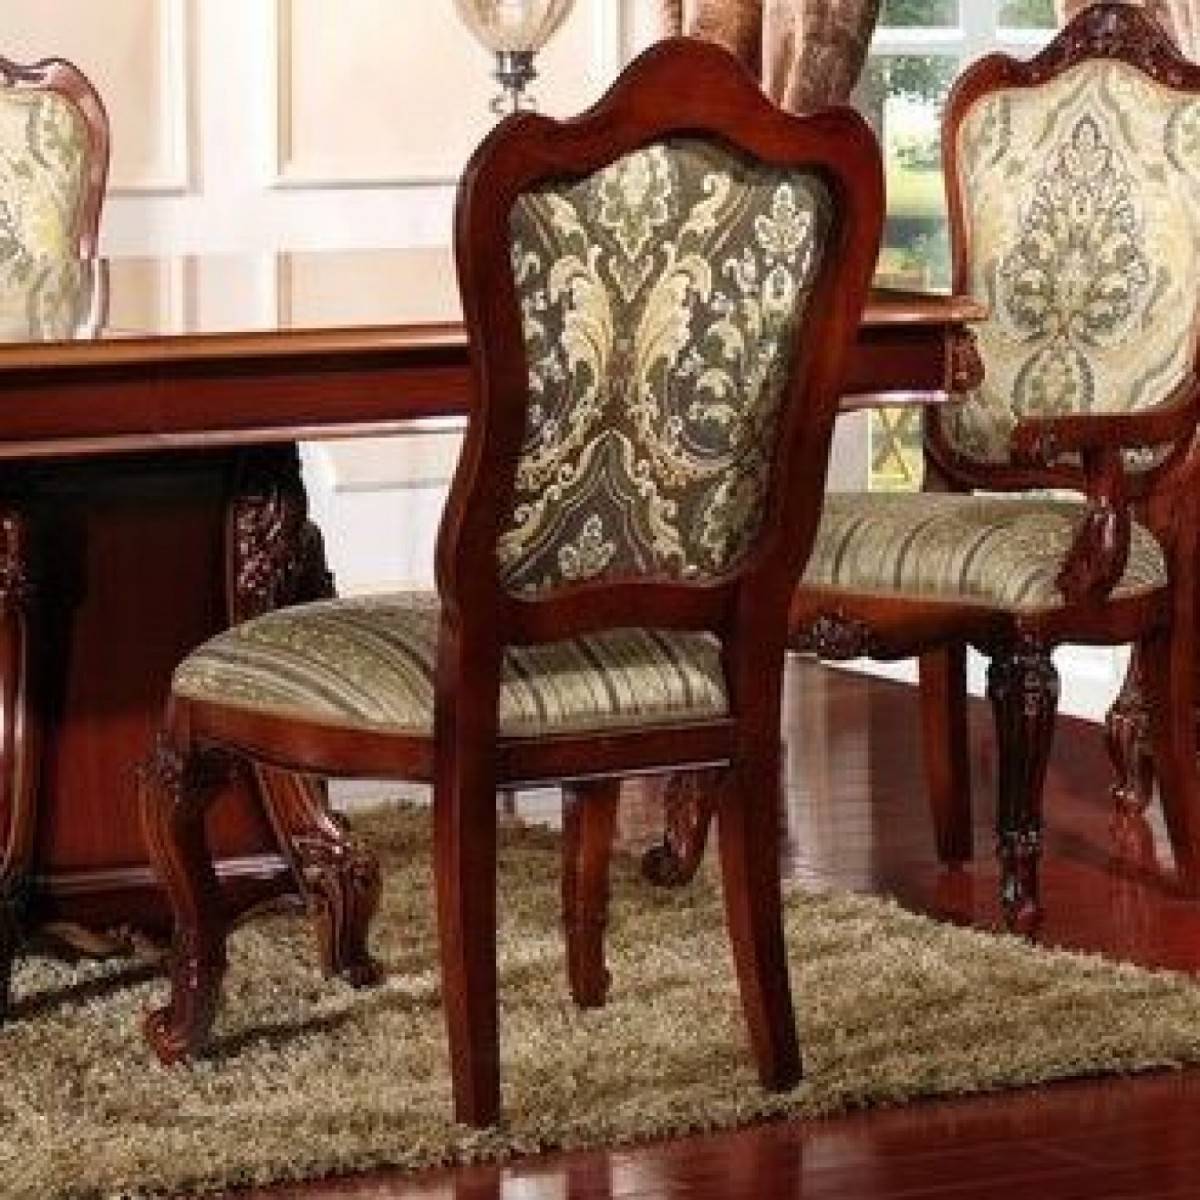 5 советов, какое кресло выбрать в гостиную